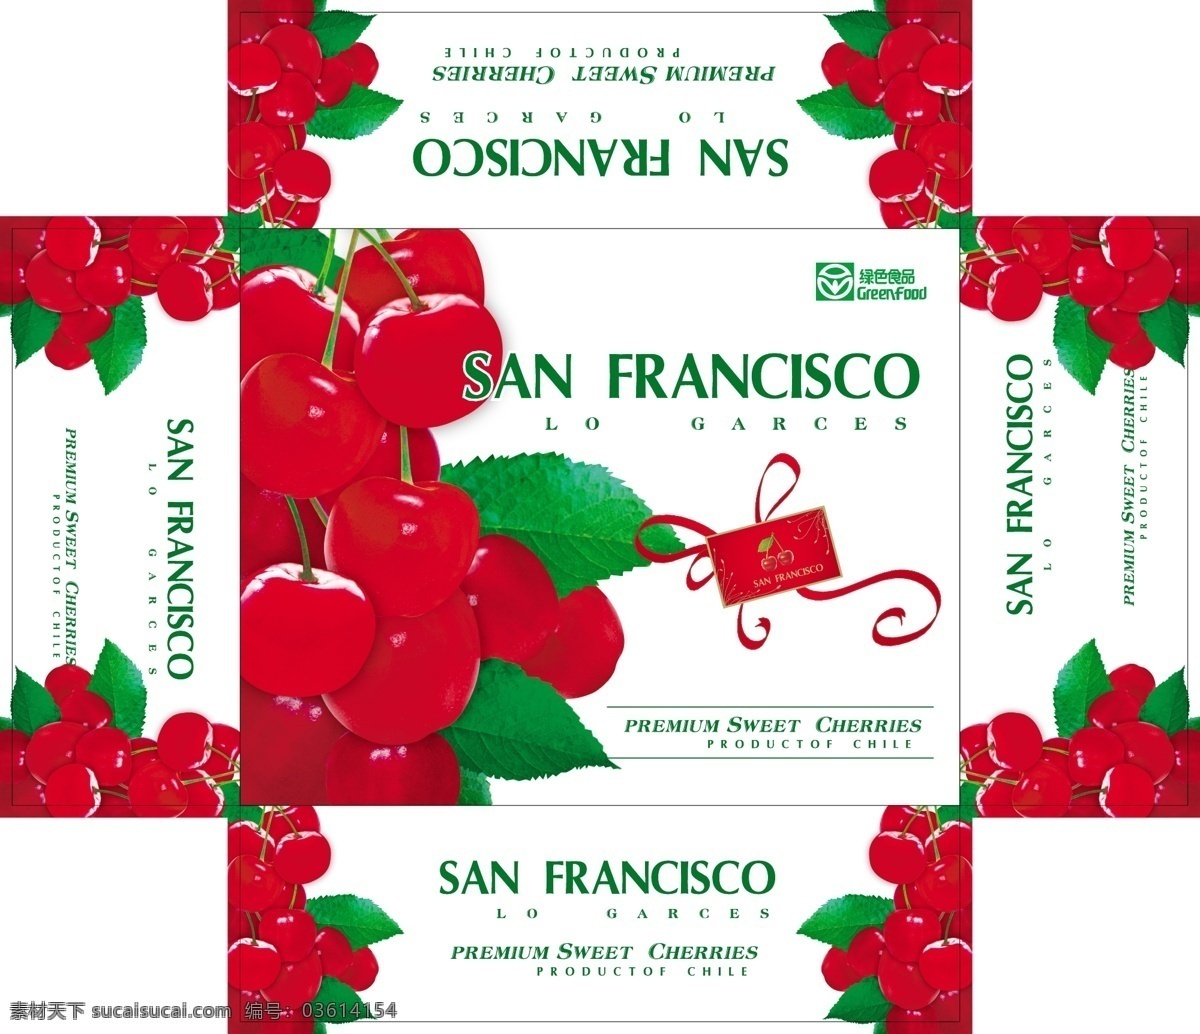 进口 樱桃 包装盒 绿色食品标志 一串红樱桃 矢量樱桃 san francisco 包装设计 矢量